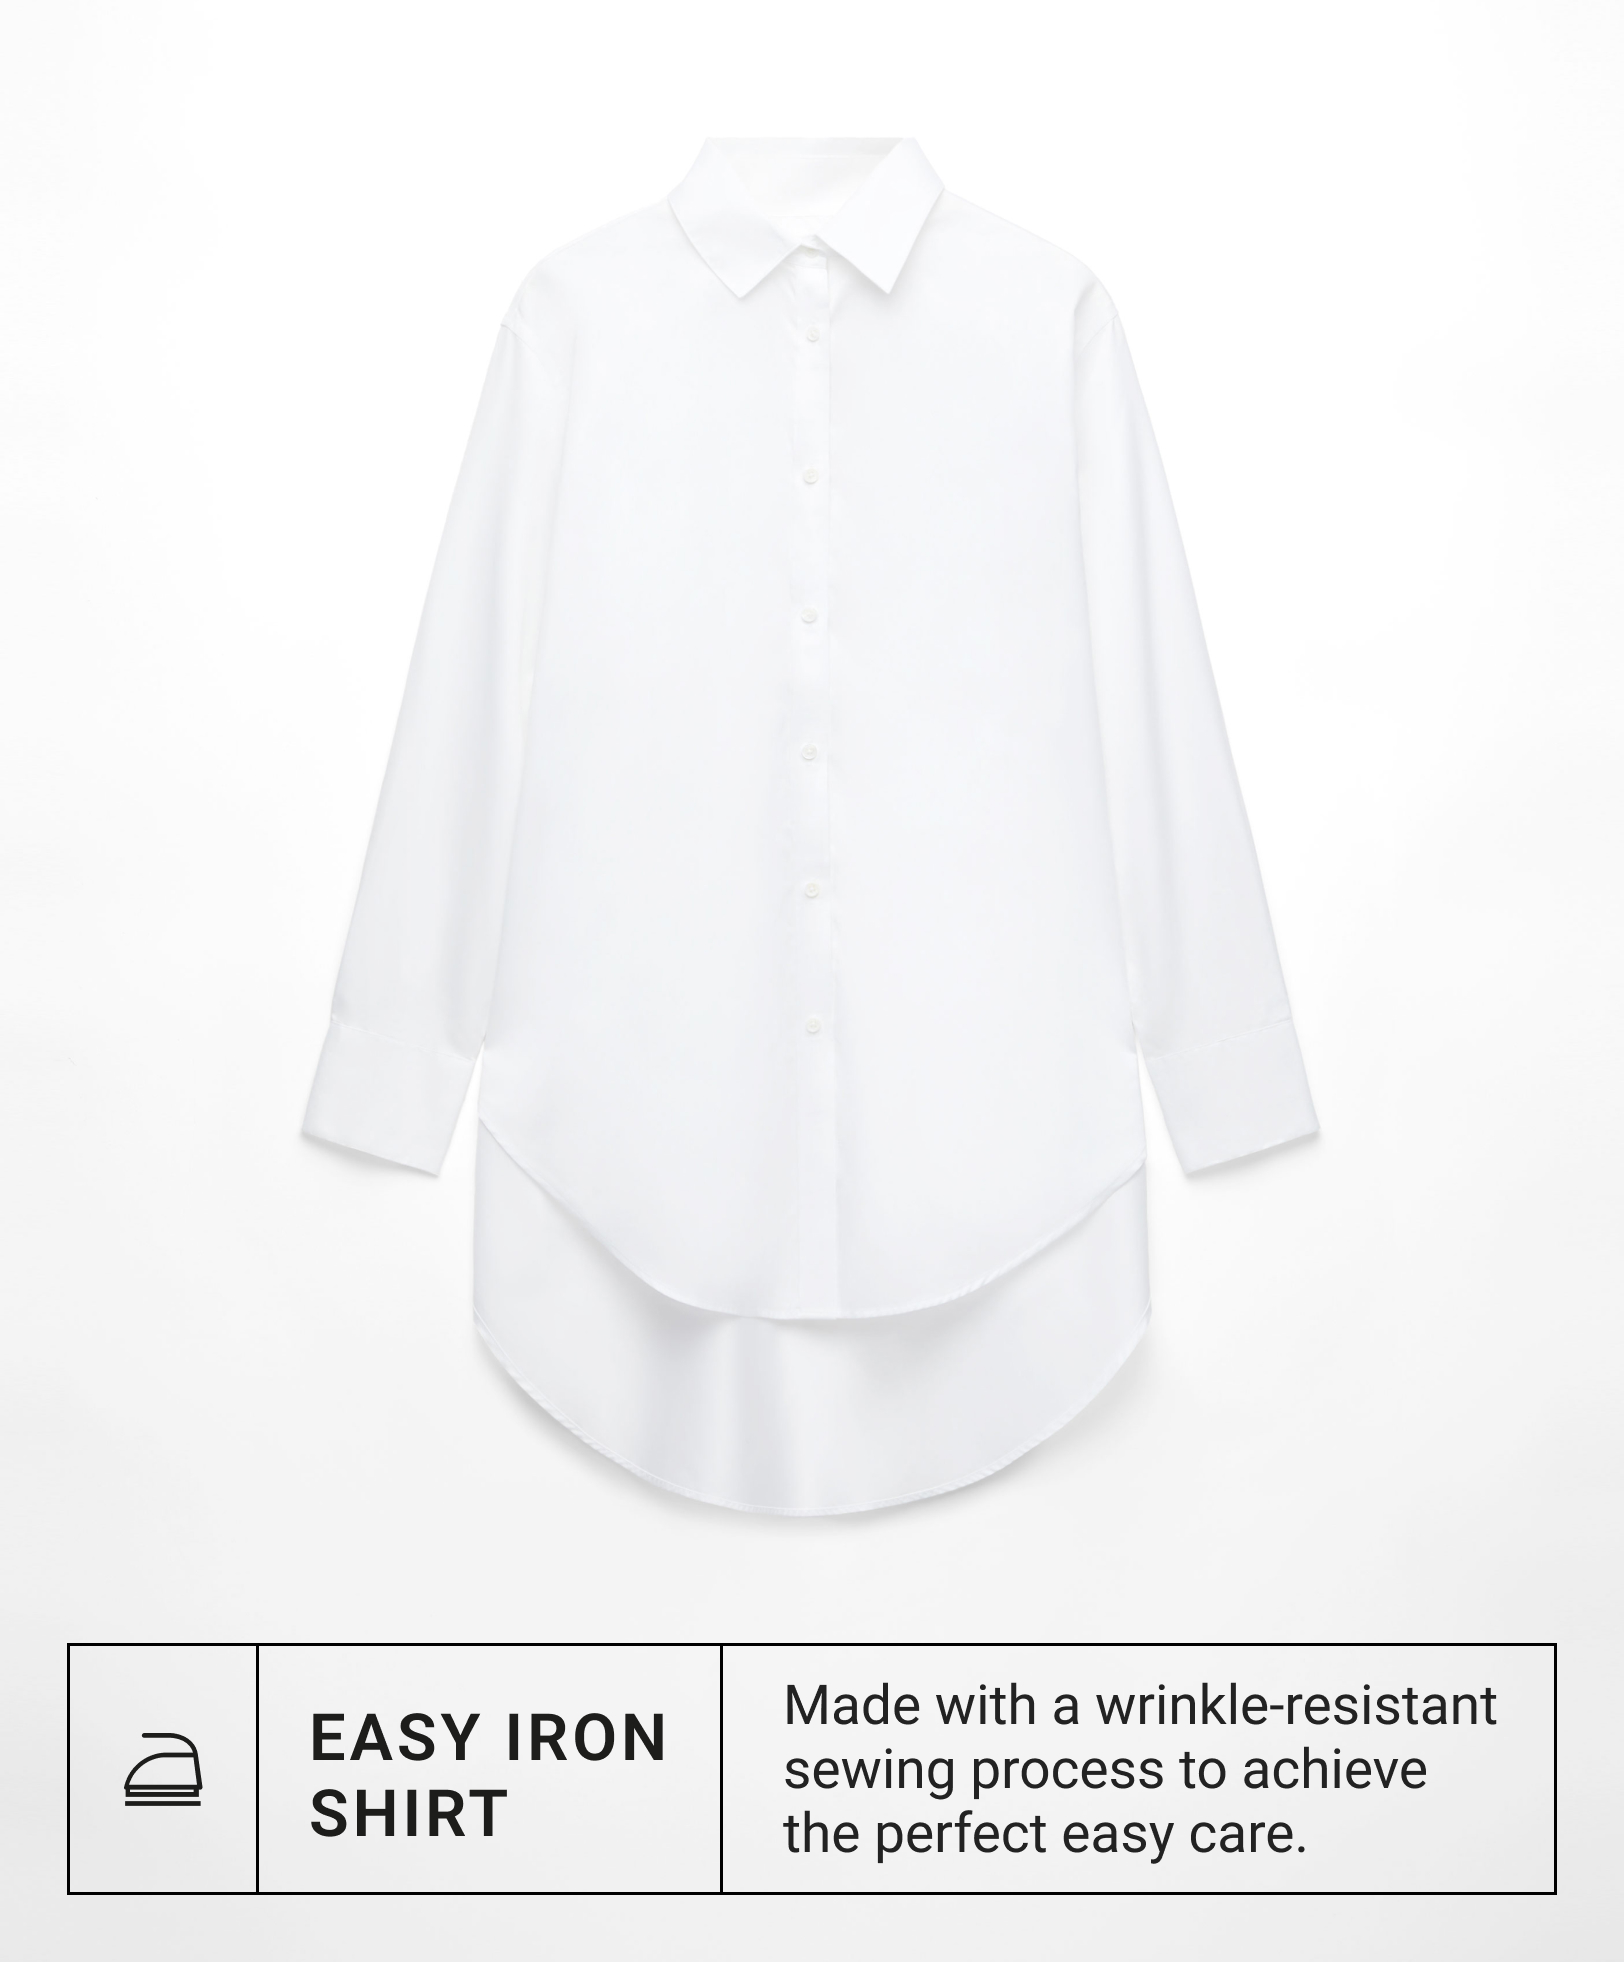 Blusa easy iron 100% algodón